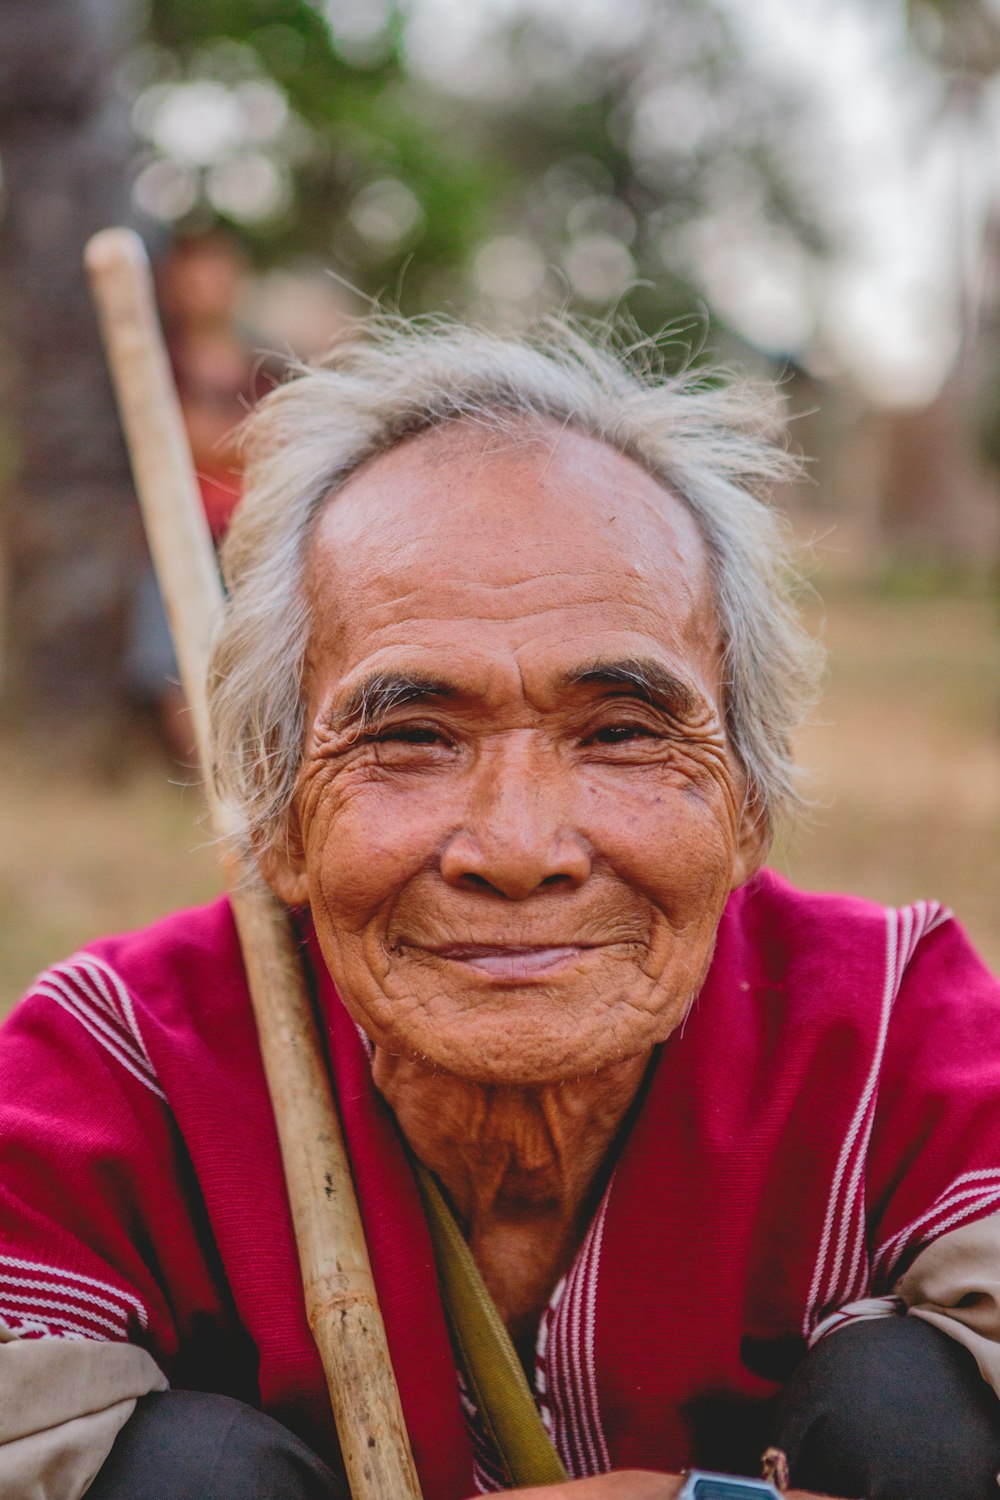 man holding brown stick smiling